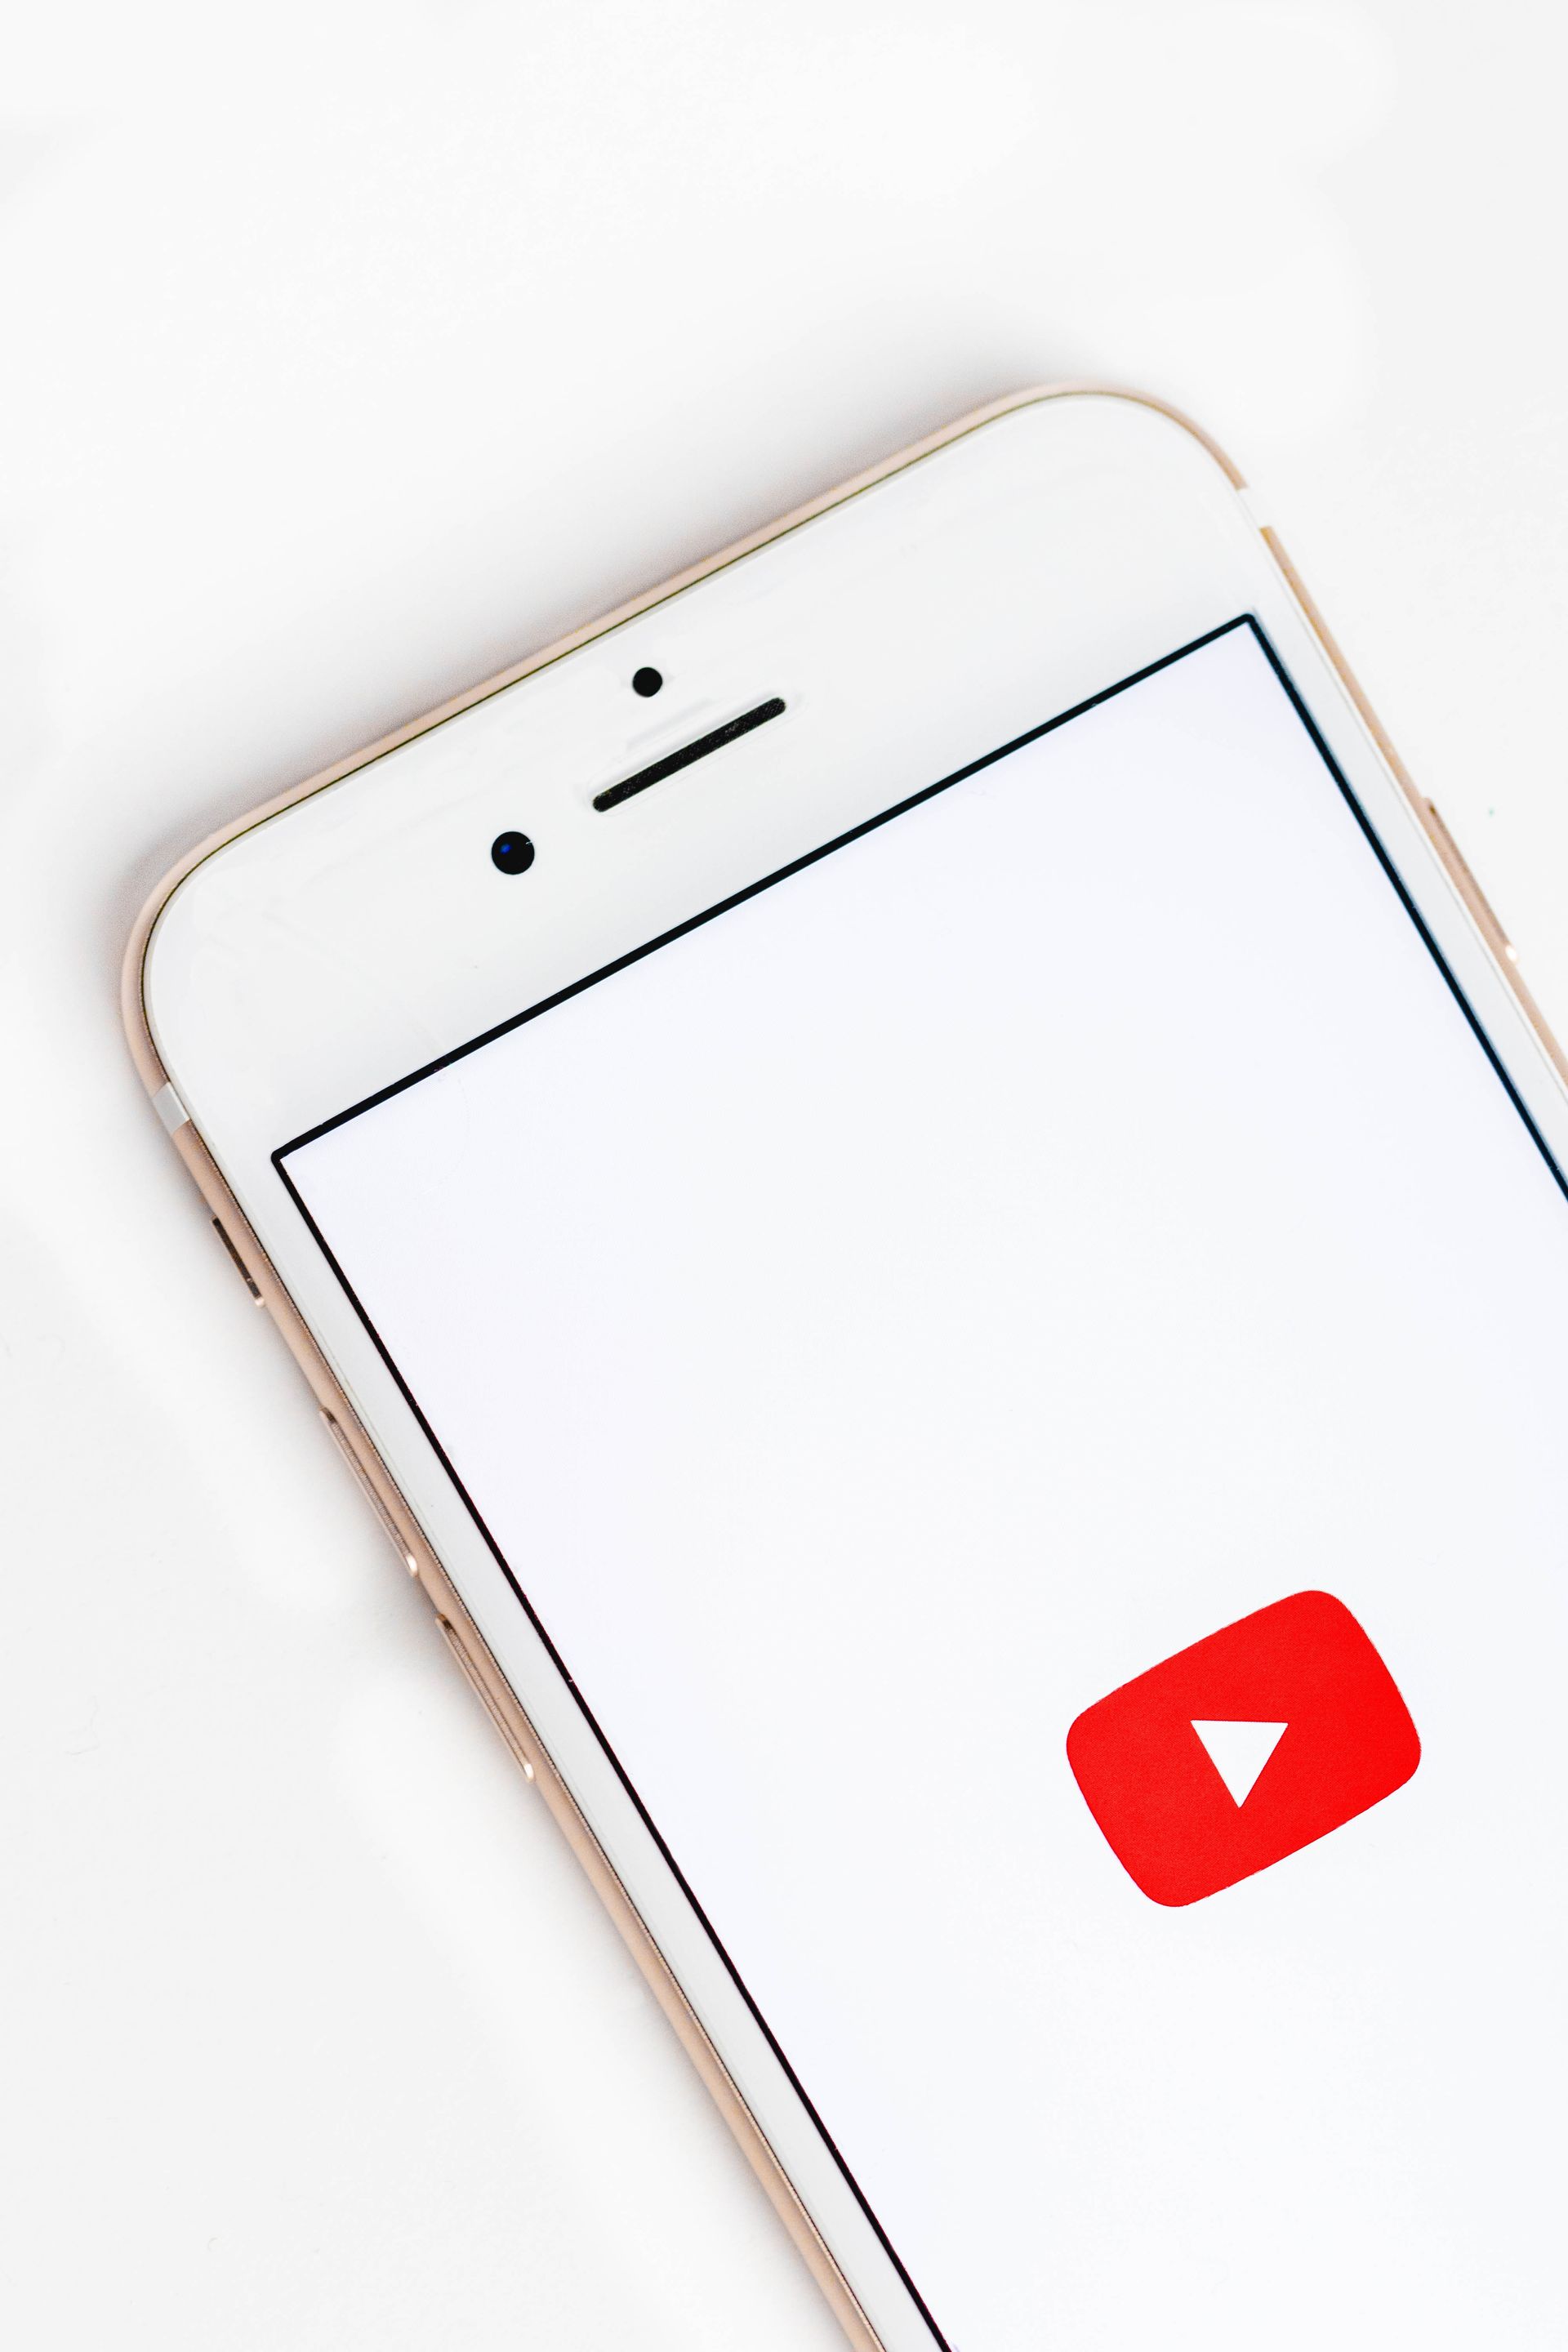 Bild von Unsplash mit einem Handy und einem YouTube Logo